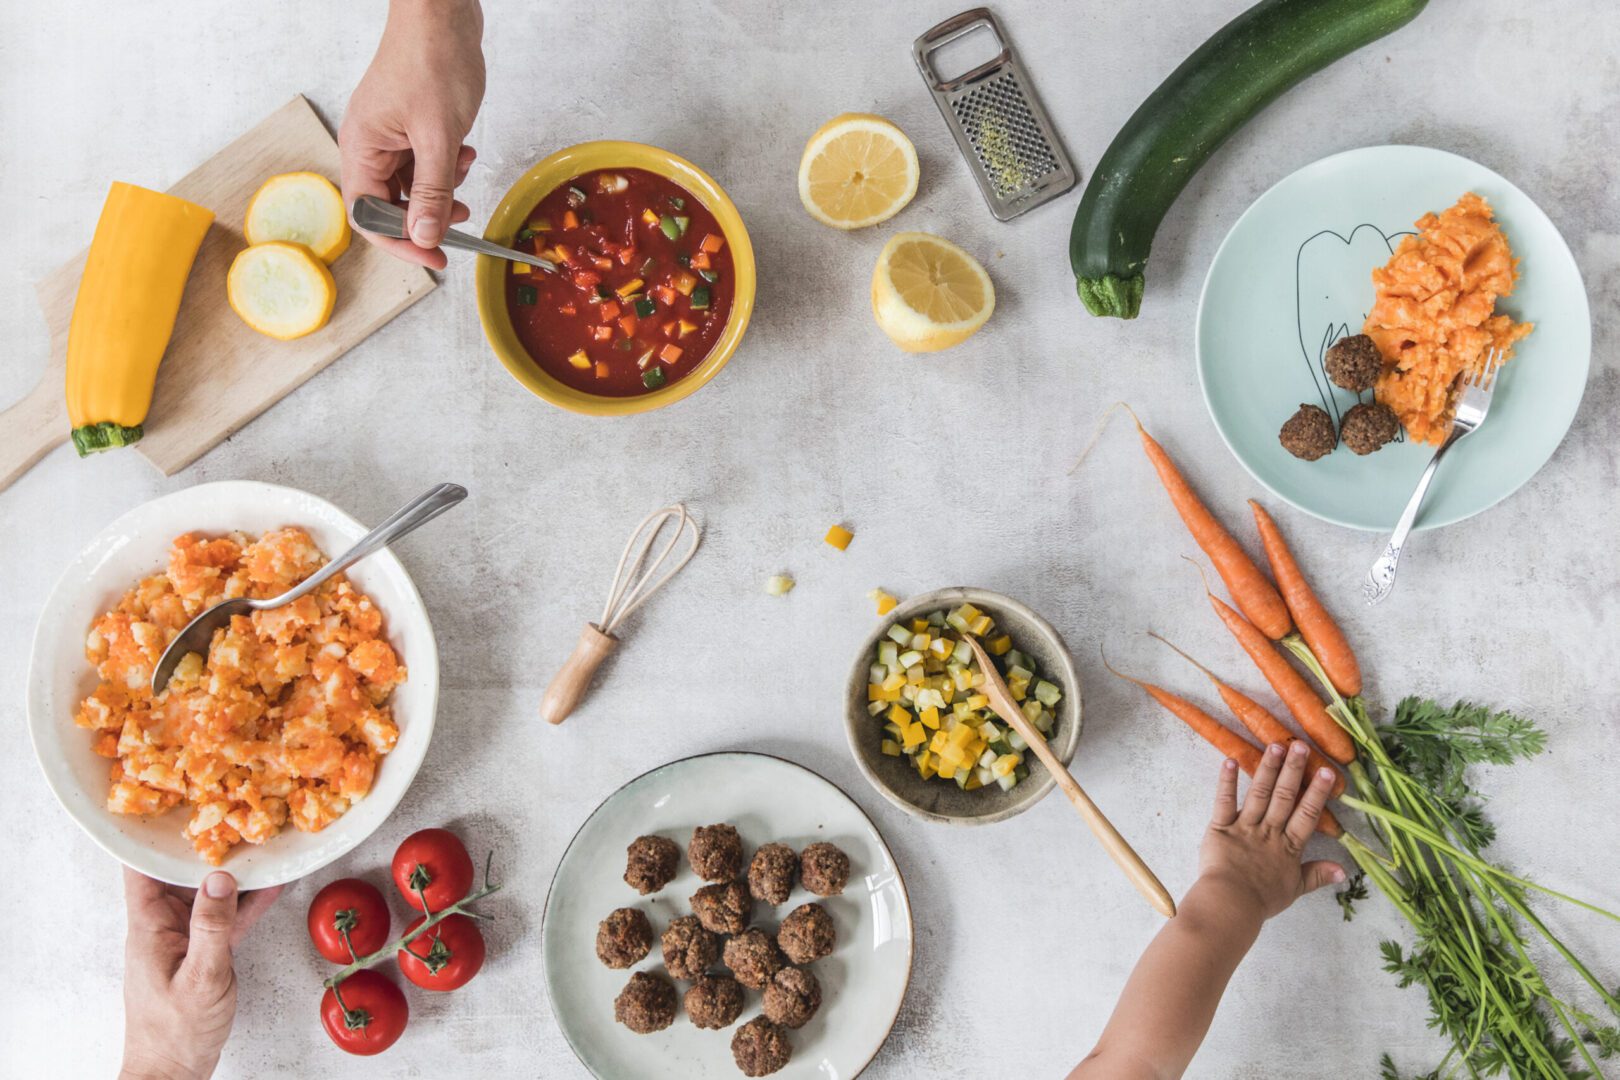 Een bovenaanzicht van een bezige keukentafel met een hand die een schaal met stamppot vasthoudt, een kom met verse salsa, gesneden courgette en een halve gele pompoen, een bord met wortelpuree en gehaktballetjes, en een kinderhand die naar wortels reikt